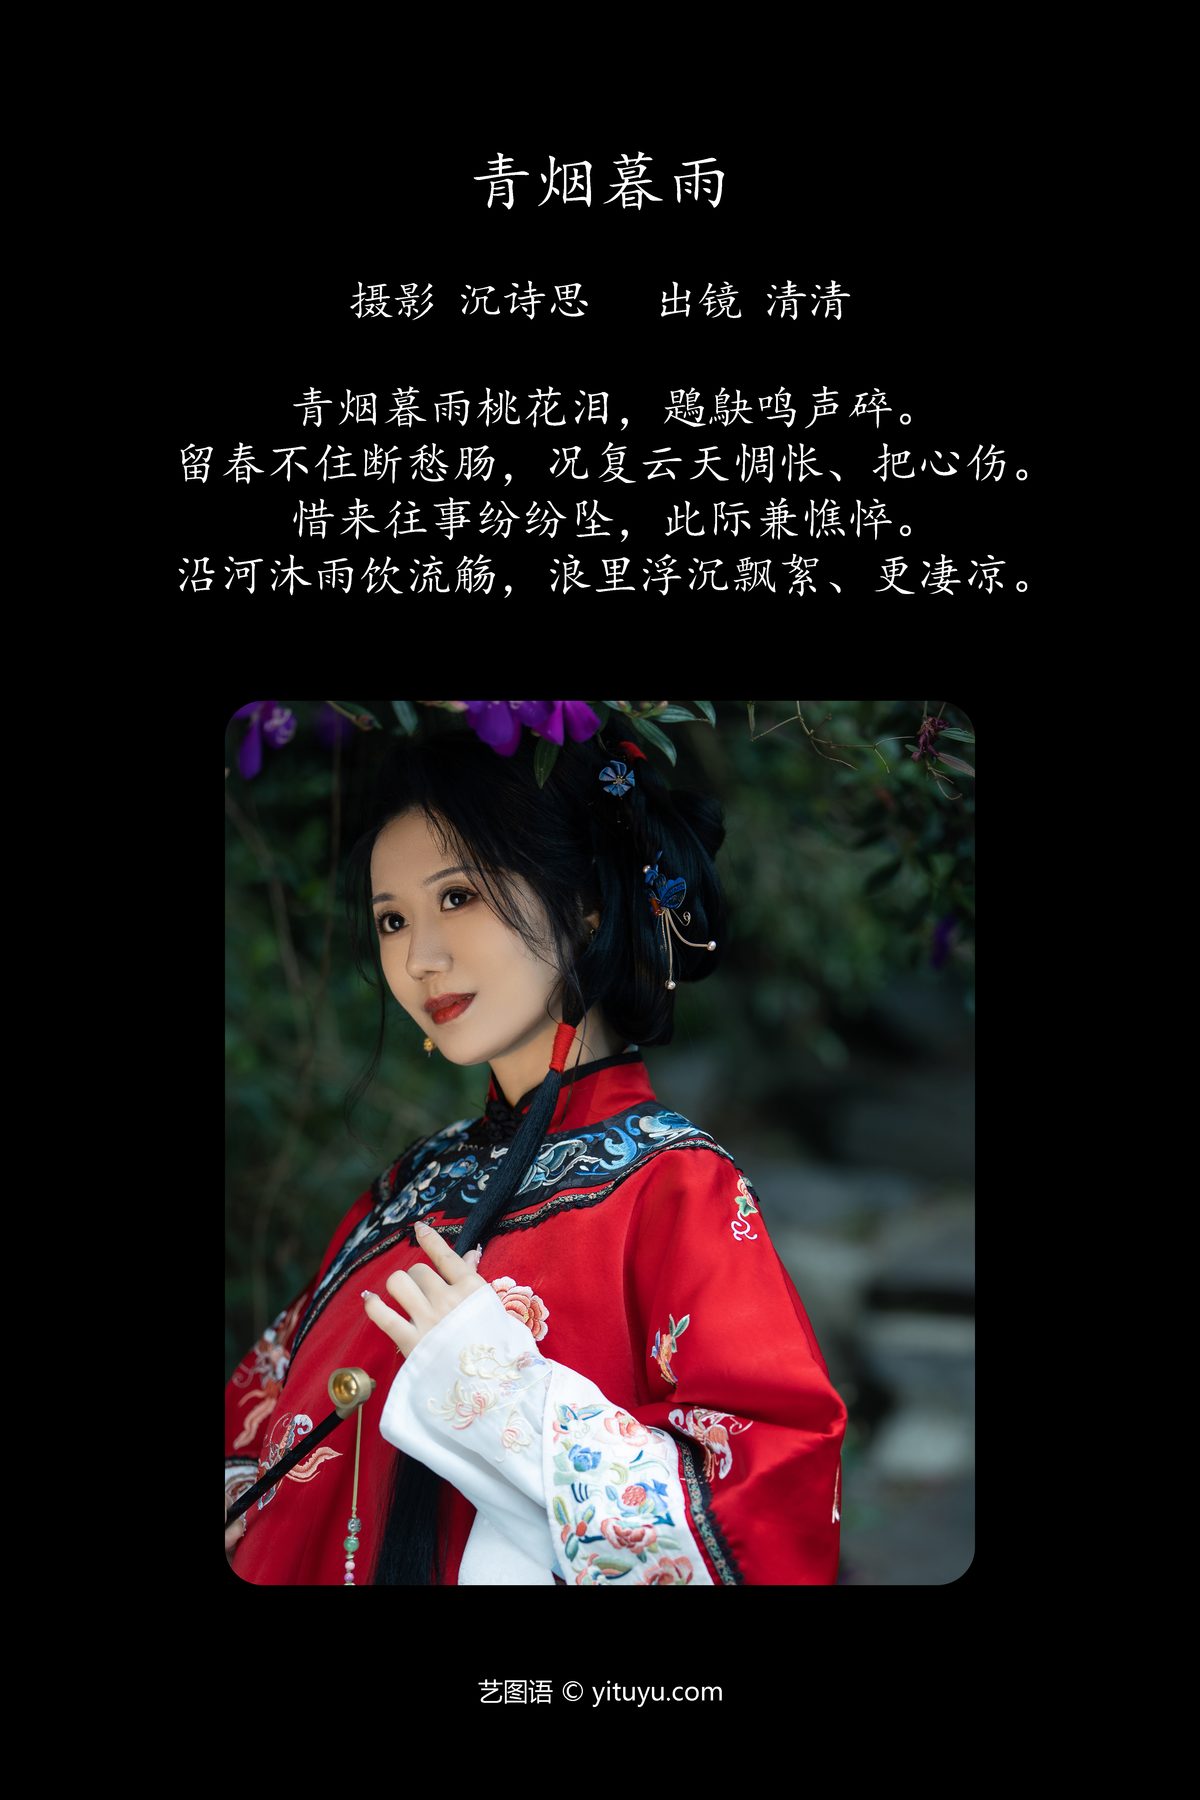 YiTuYu艺图语 Vol 4192 Qing Qing 0001 7099149216.jpg